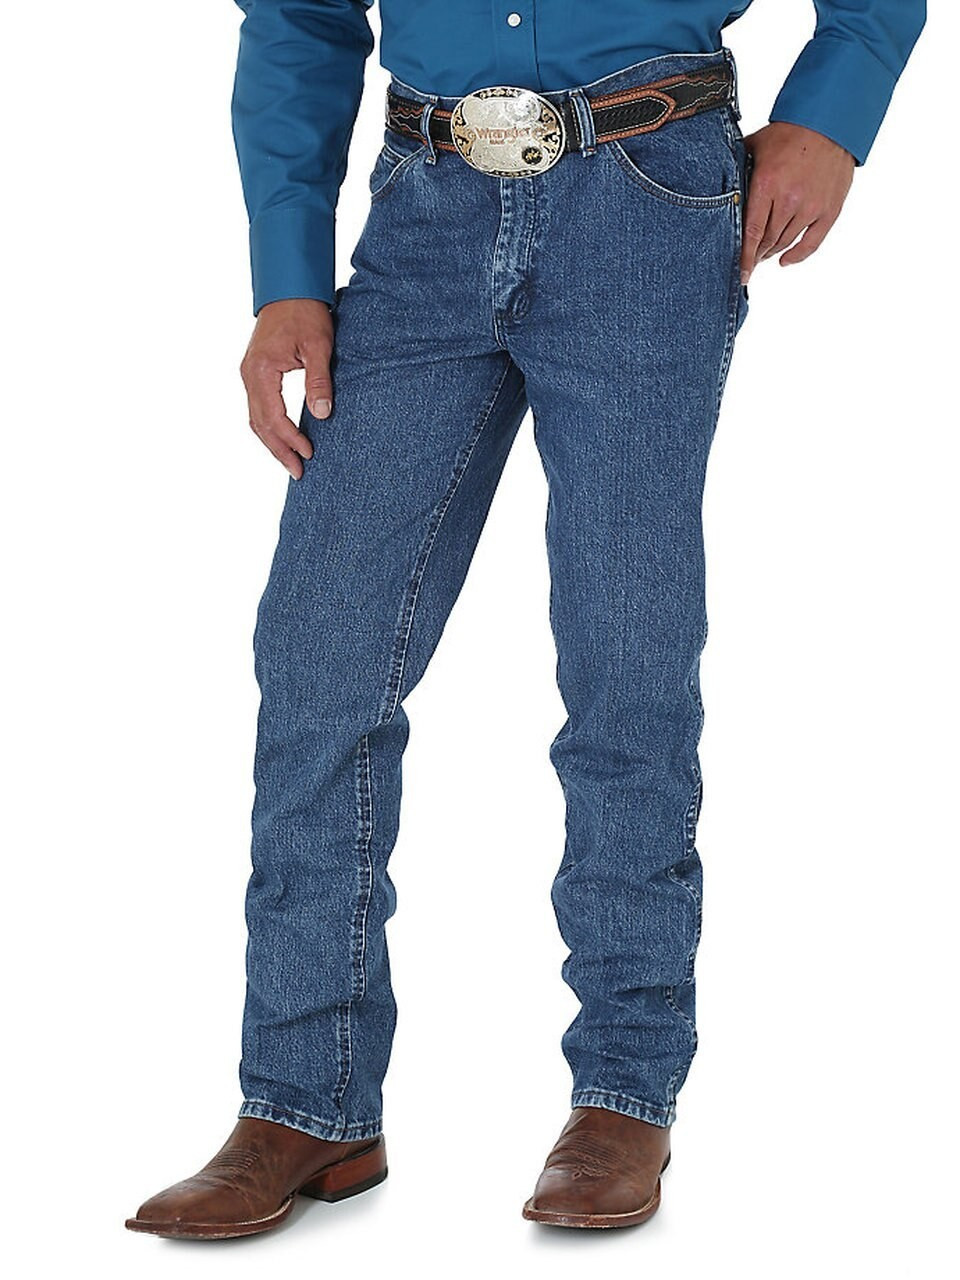 Wrangler, Men's Premium Performance Cowboy Cut Slim Fit Jeans